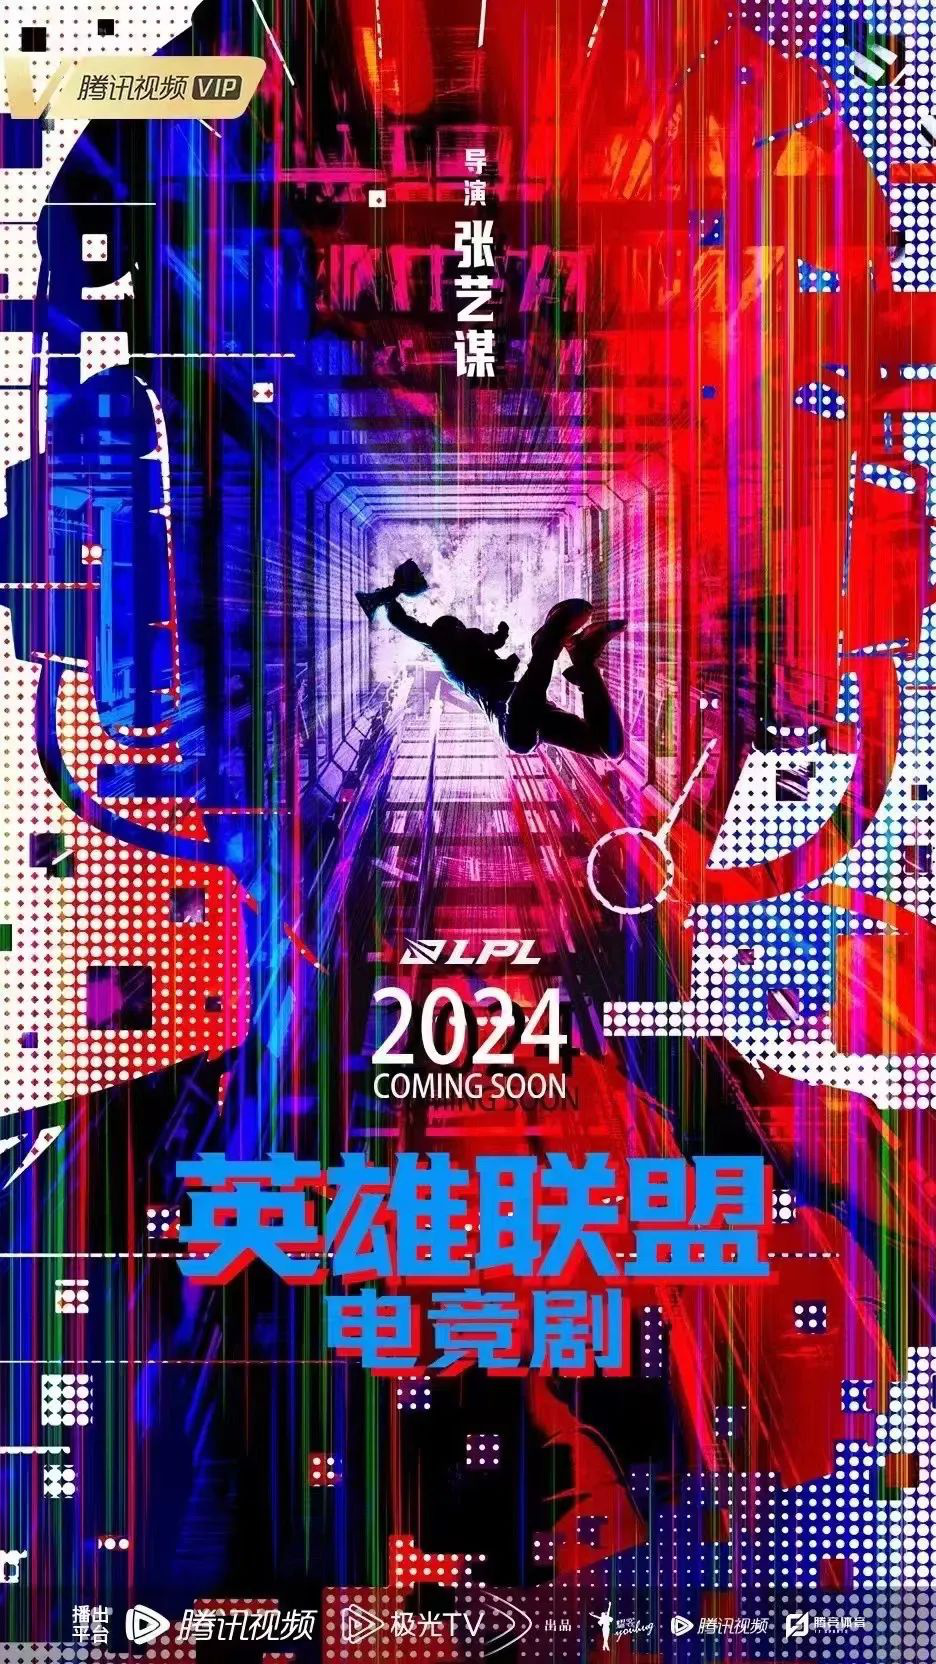 170+剧集发布!《庆余年2》《英雄联盟》曝新进展